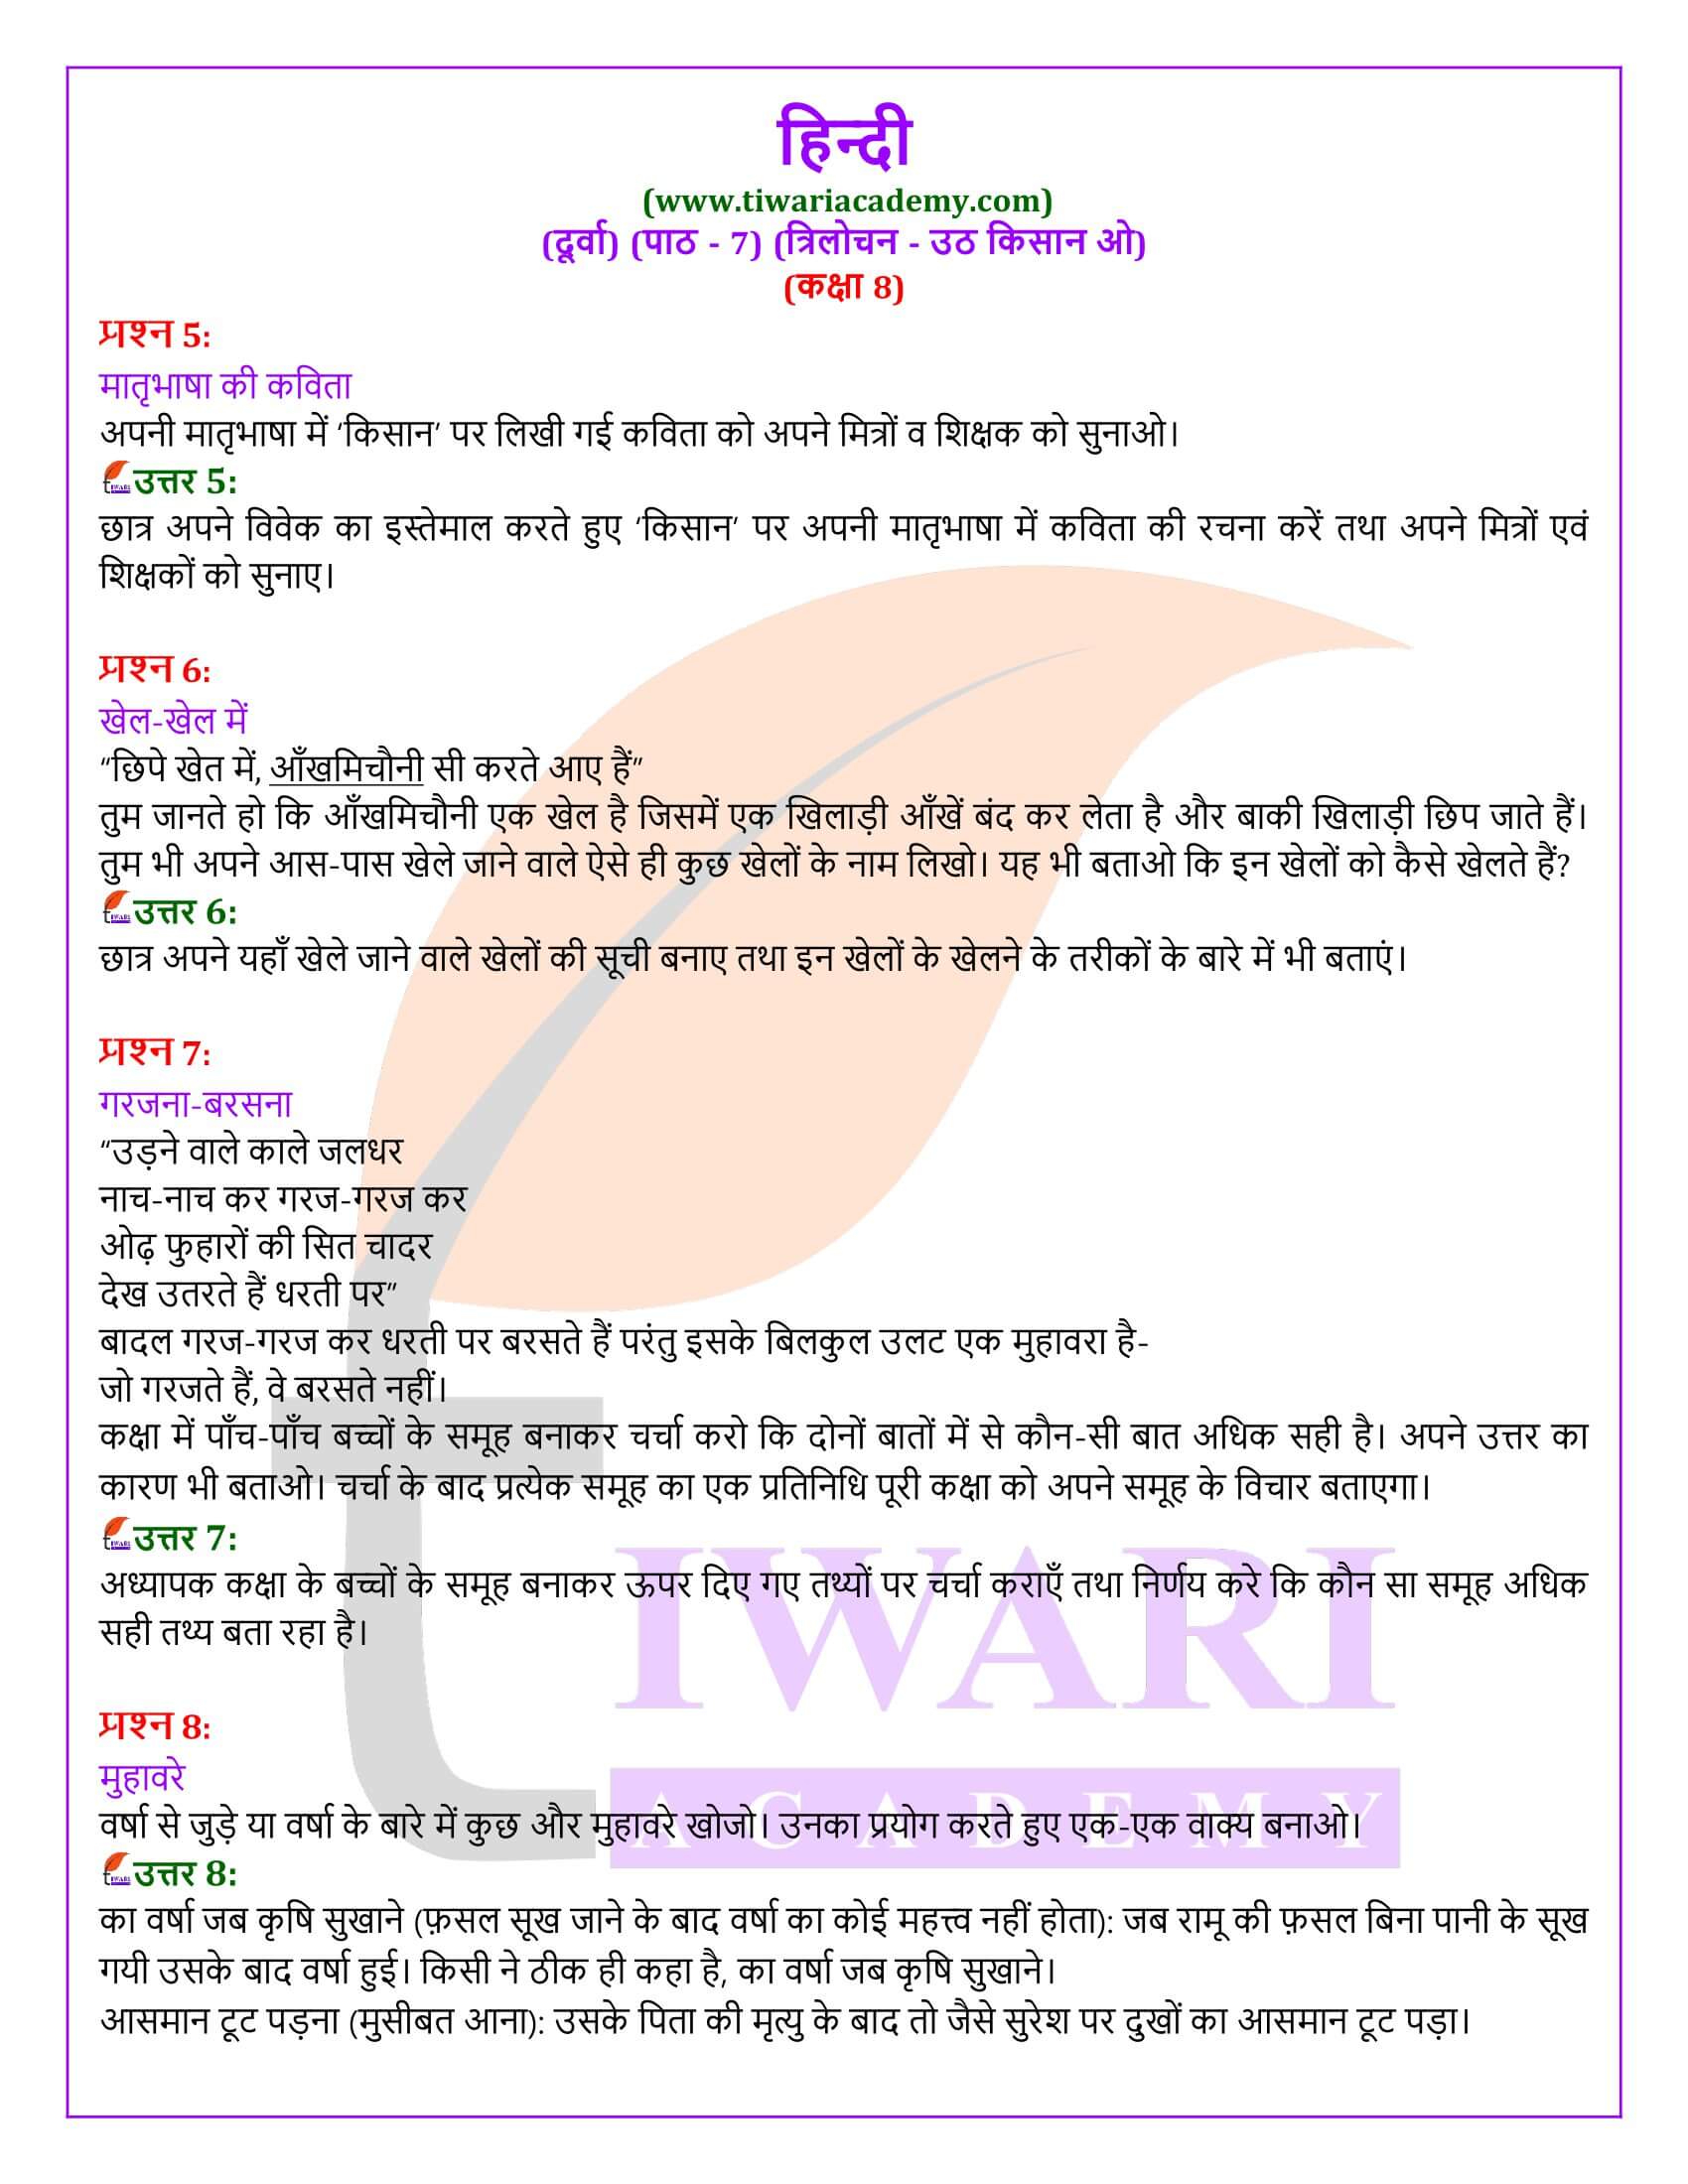 कक्षा 8 हिंदी दूर्वा अध्याय 7 के प्रश्न उत्तर